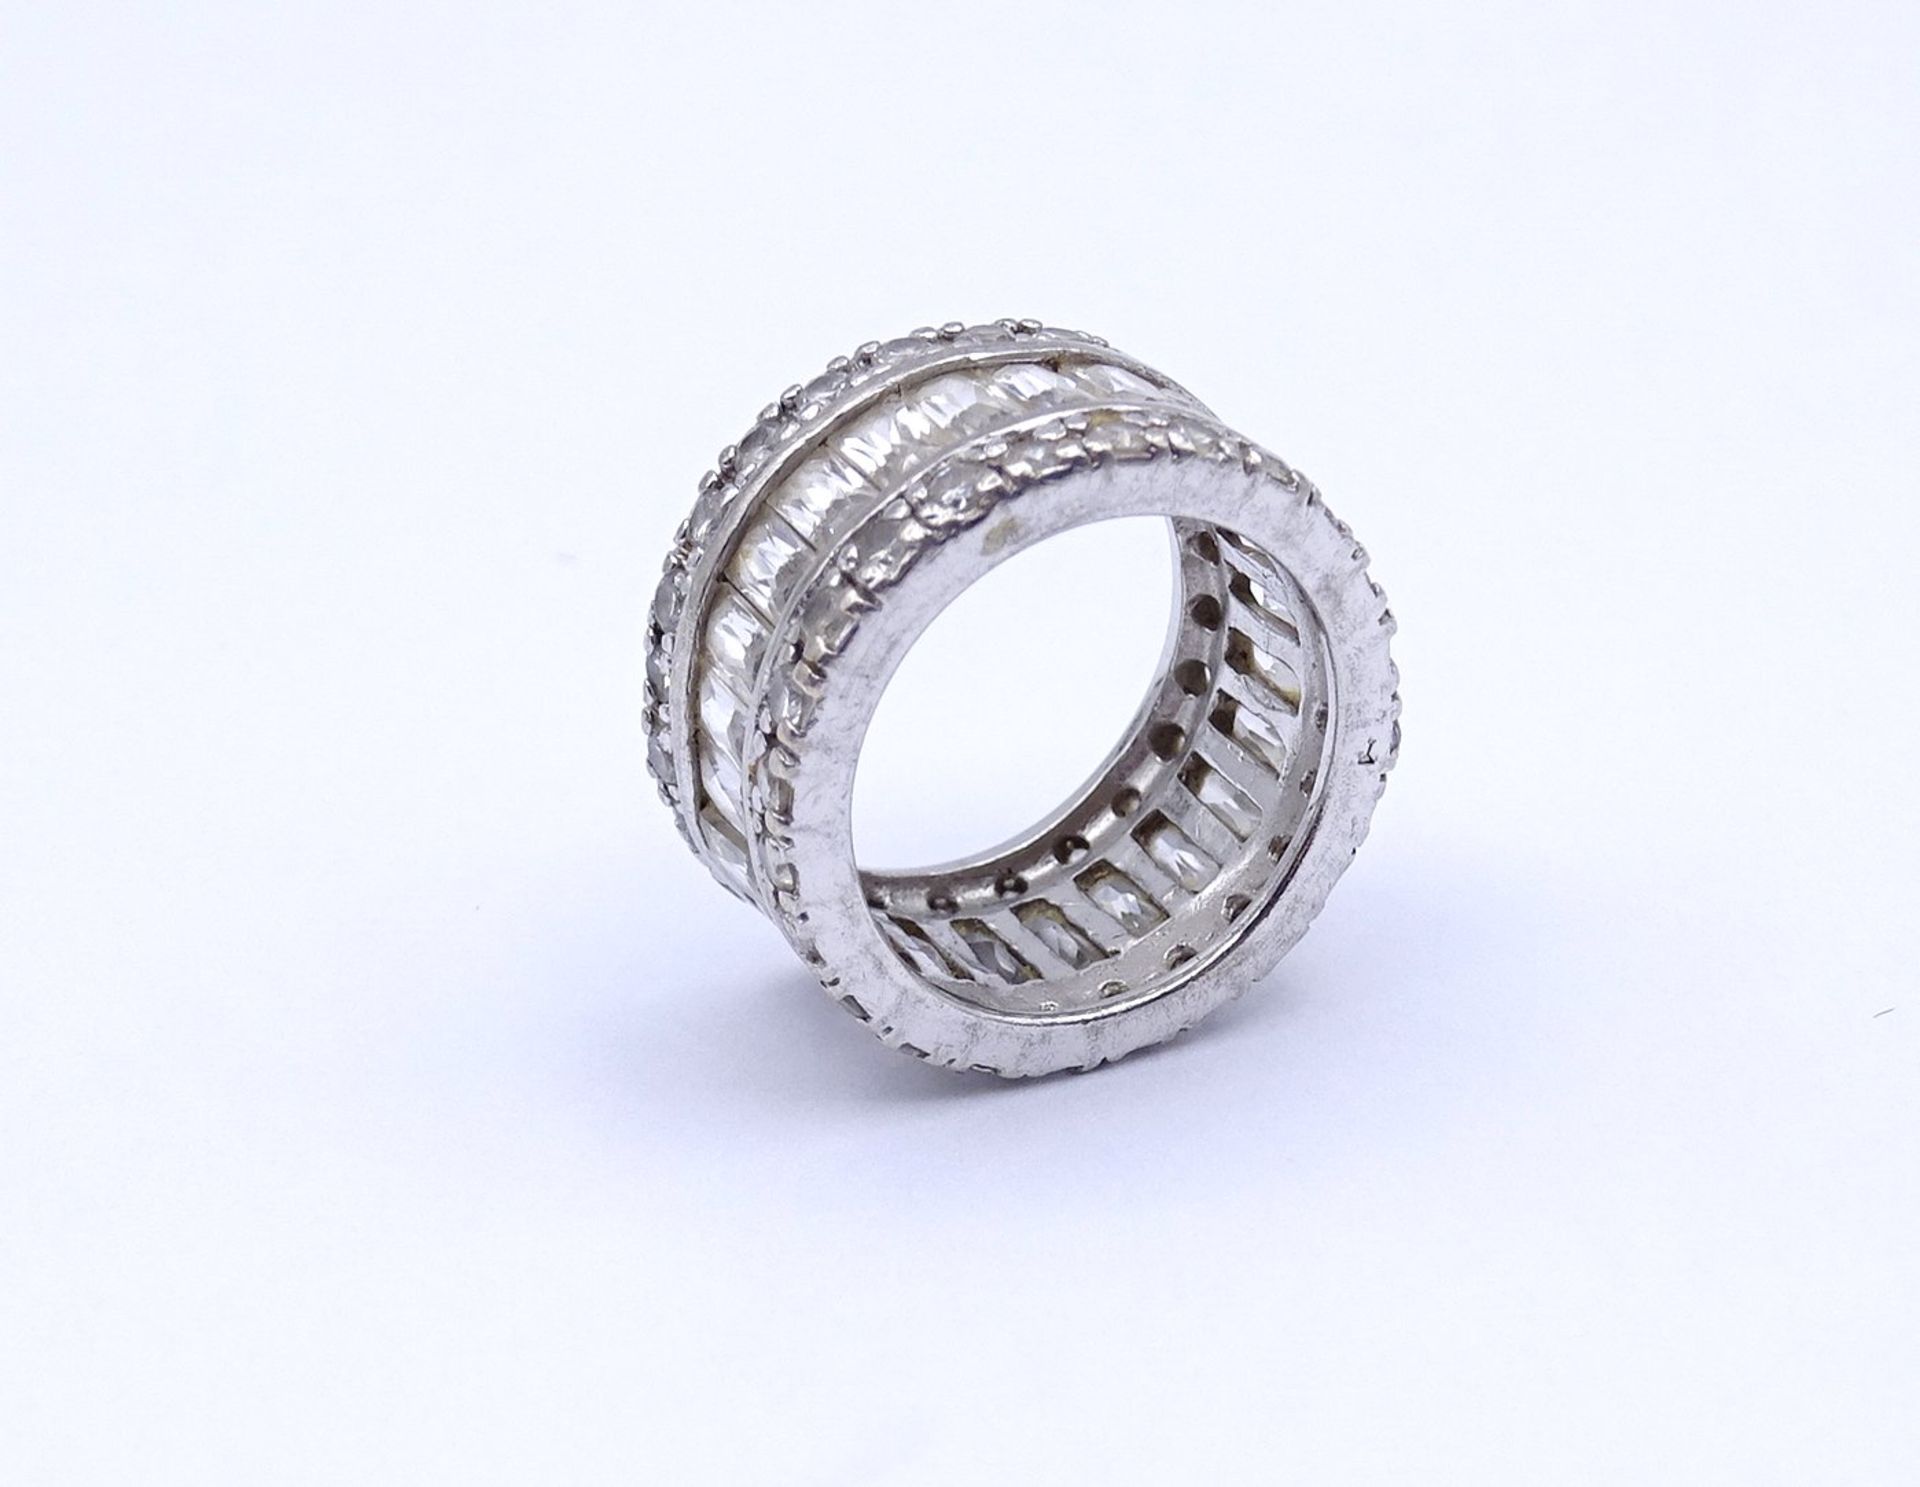 925er Silber Ring mit klaren Steinen, 9,6g., RG 52 - Image 3 of 3